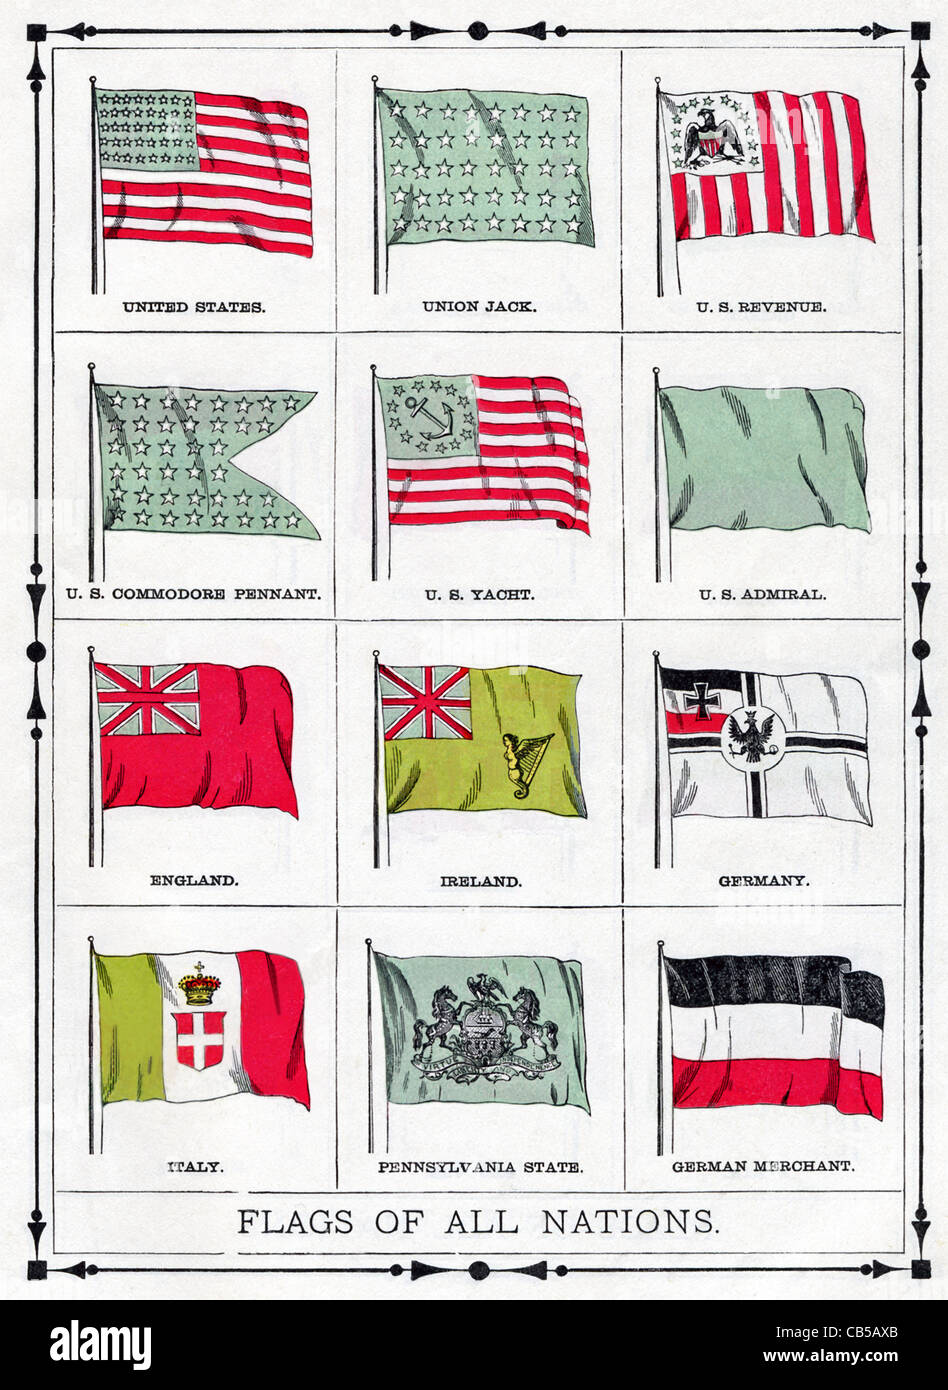 In dieser Abbildung gezeigten Flaggen wurden aktuelle 1896. Dazu gehören die USA, England, Irland, Deutschland und Italien. Stockfoto